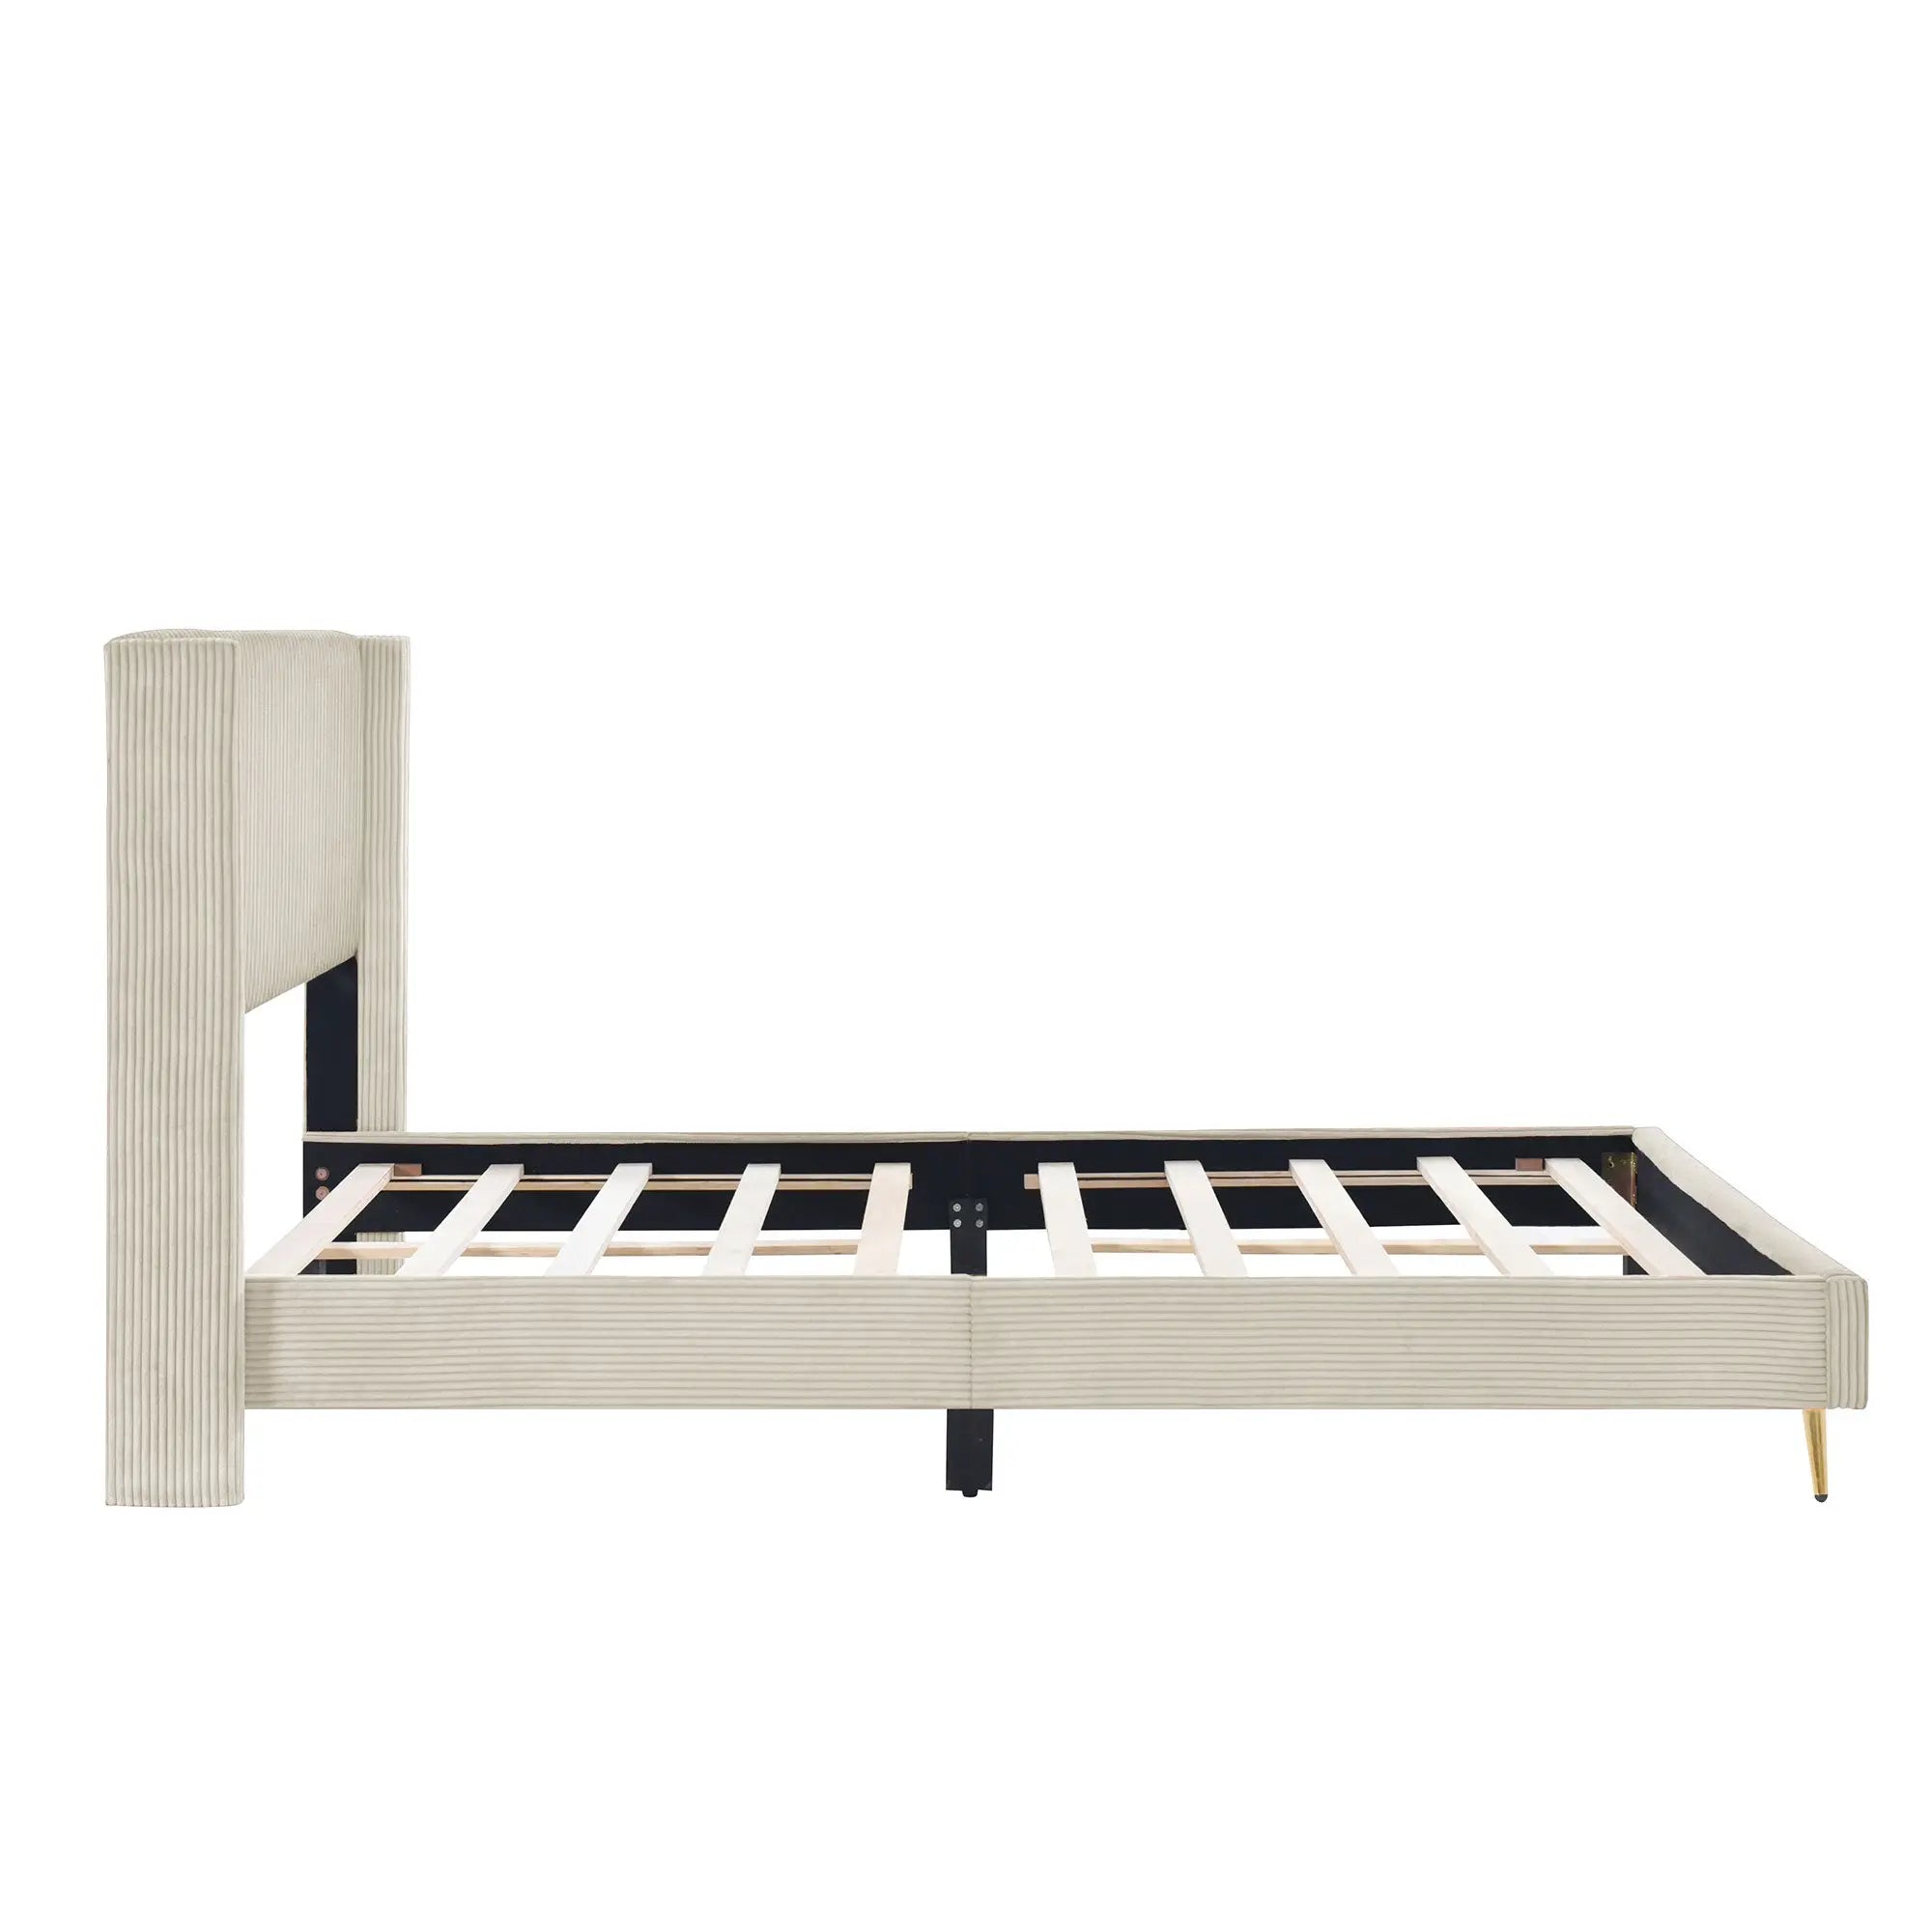 Bellemave® Queen Size Corduroy Platform Bed with Metal Legs